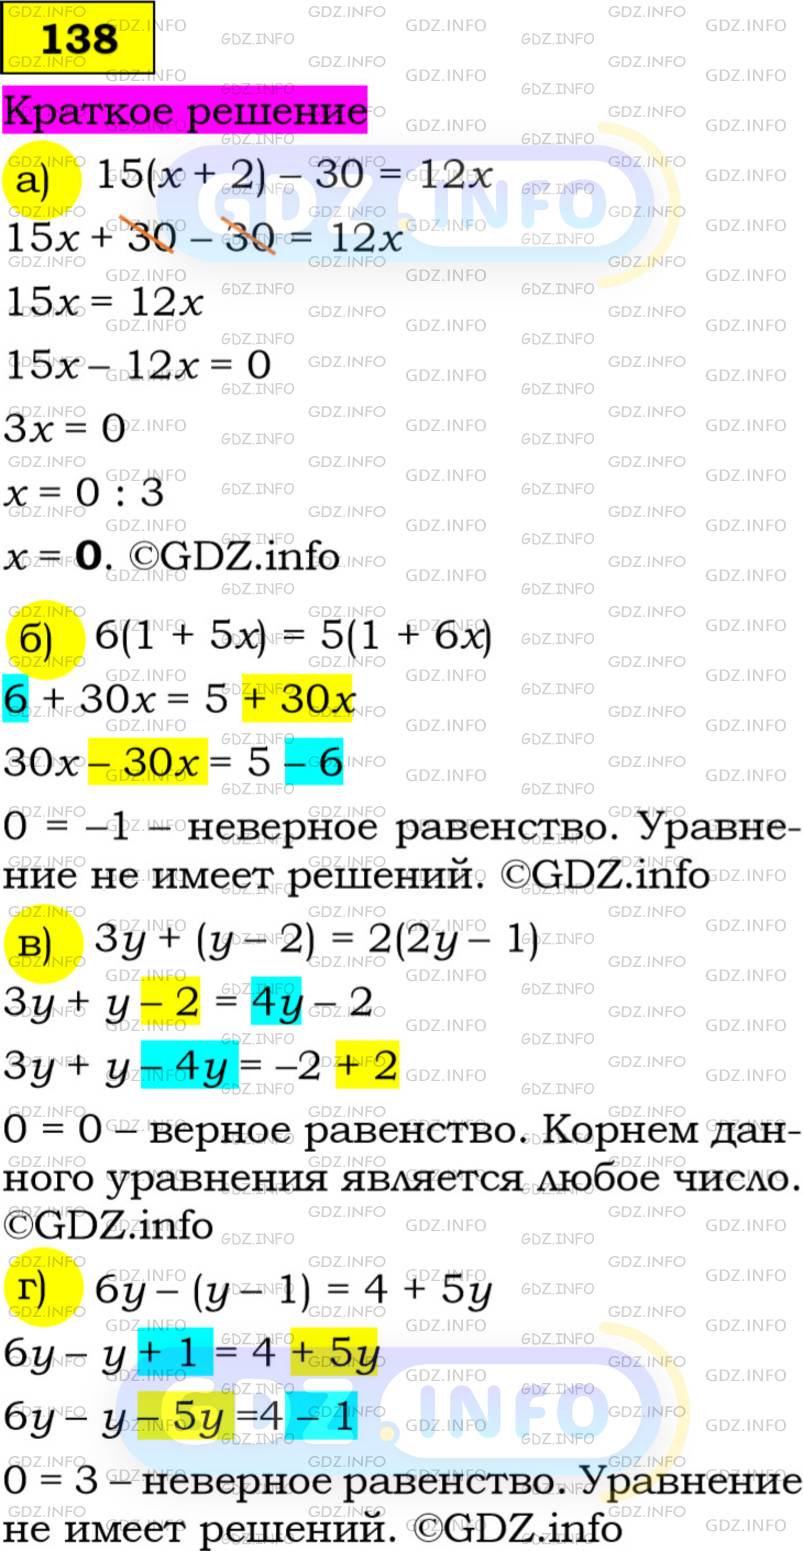 Фото решения 2: Номер задания №138 из ГДЗ по Алгебре 7 класс: Макарычев Ю.Н. г.